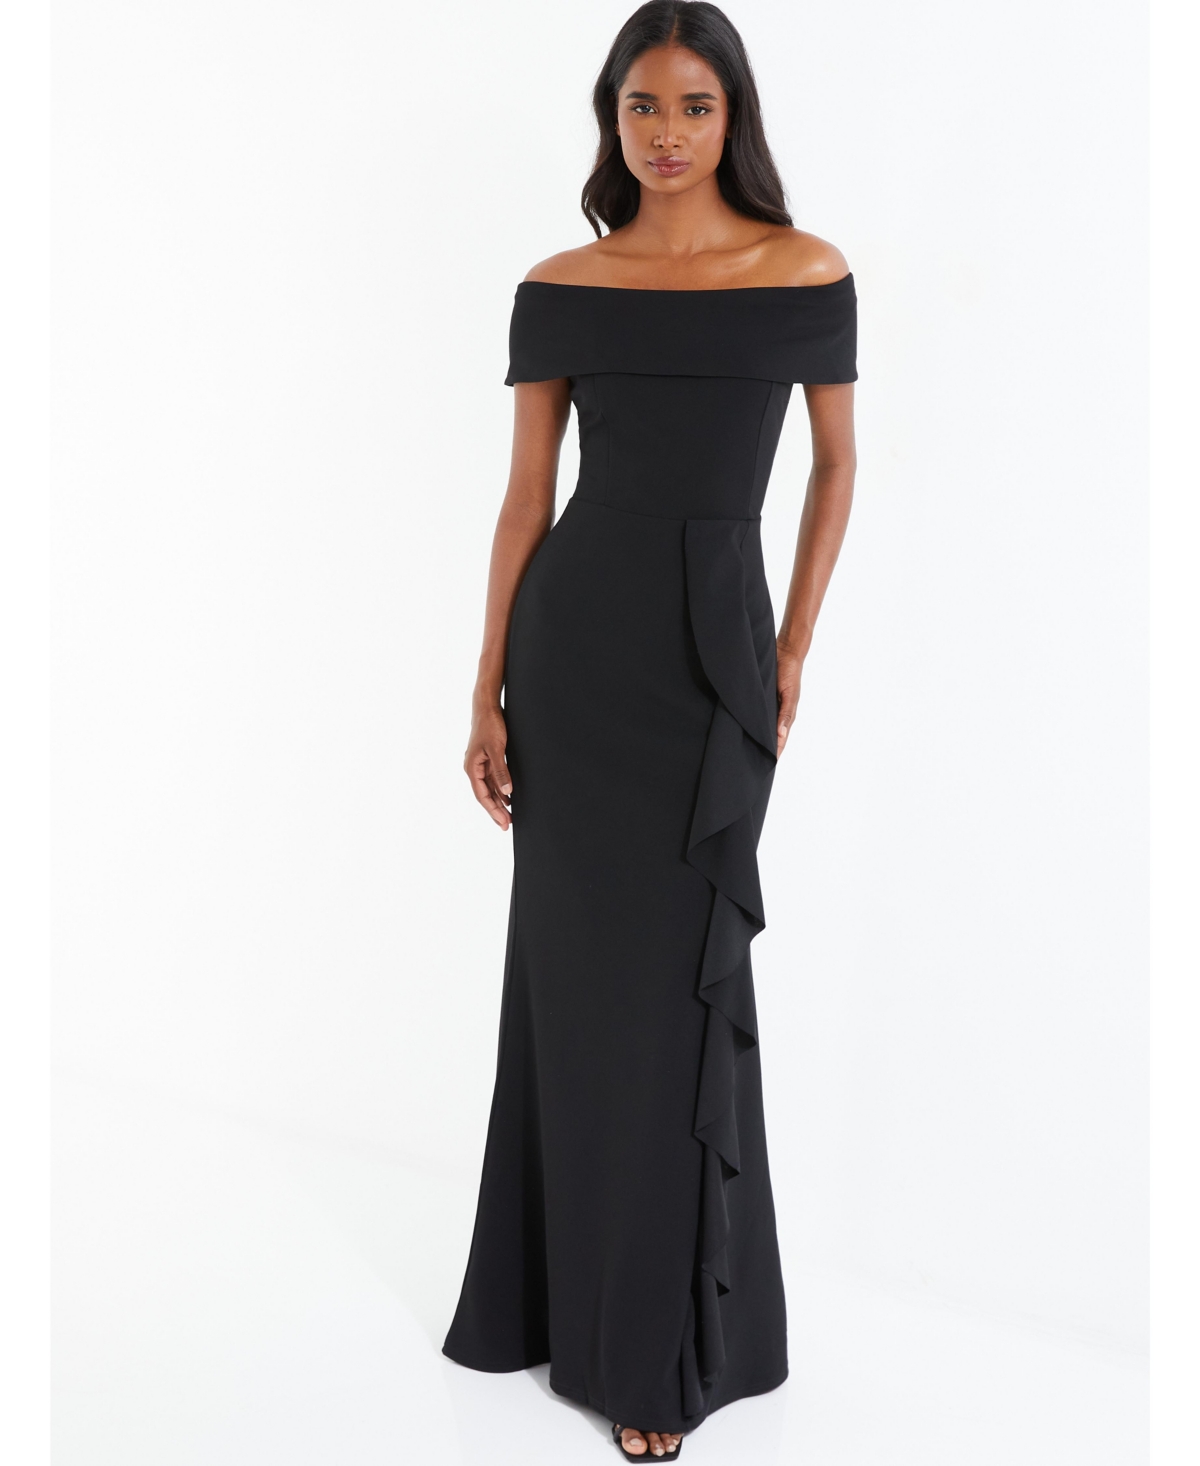 Women's Off The Shoulder Maxi Dress - Black